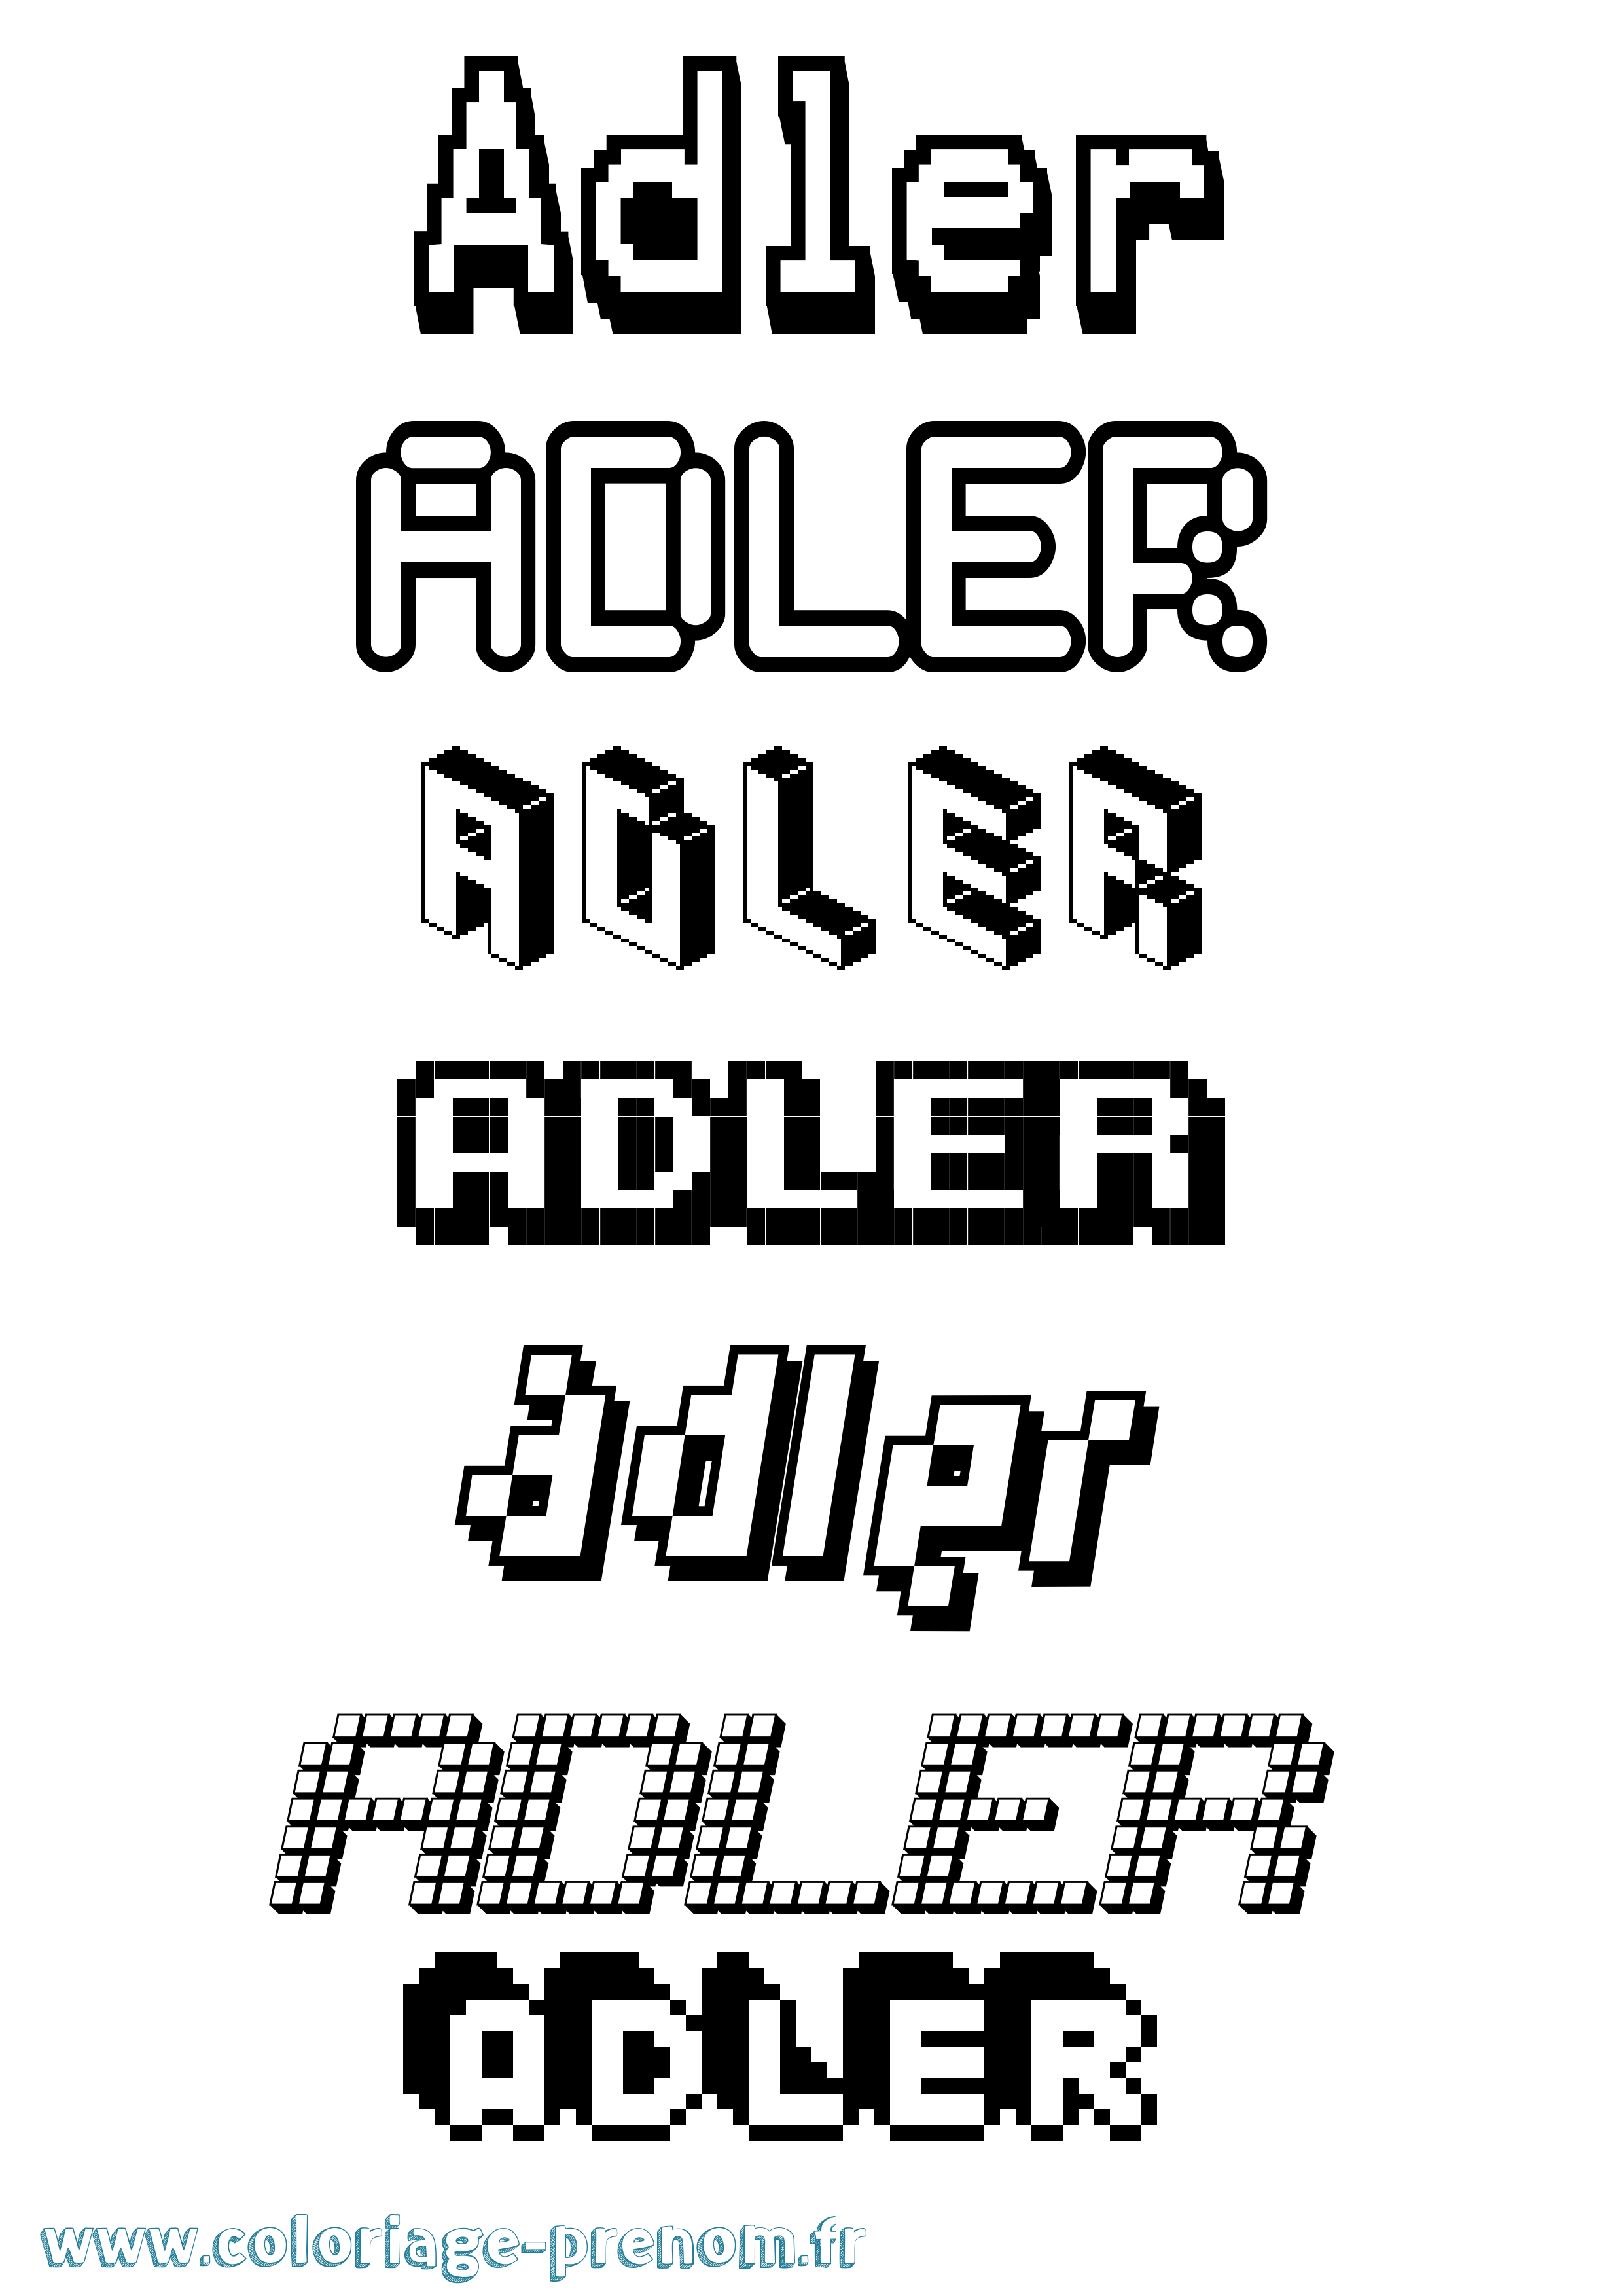 Coloriage prénom Adler Pixel